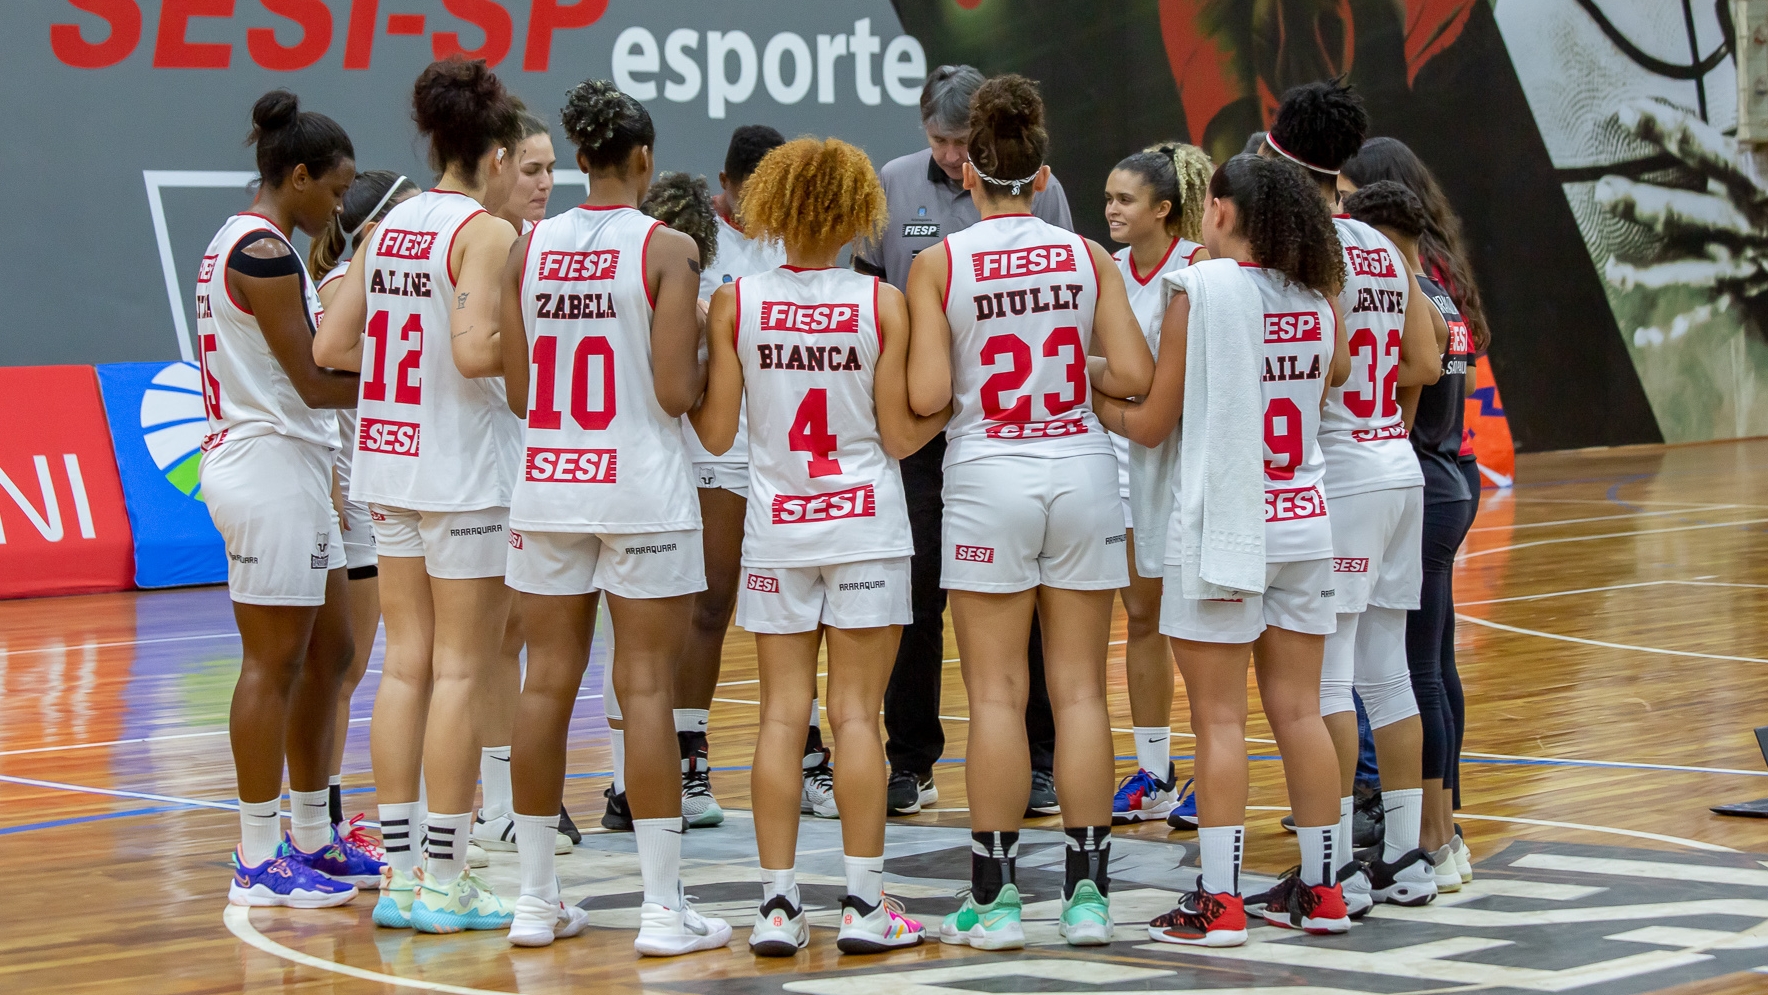 Meninas do basquete conquistam o bicampeonato paulista - Portal Morada -  Notícias de Araraquara e Região